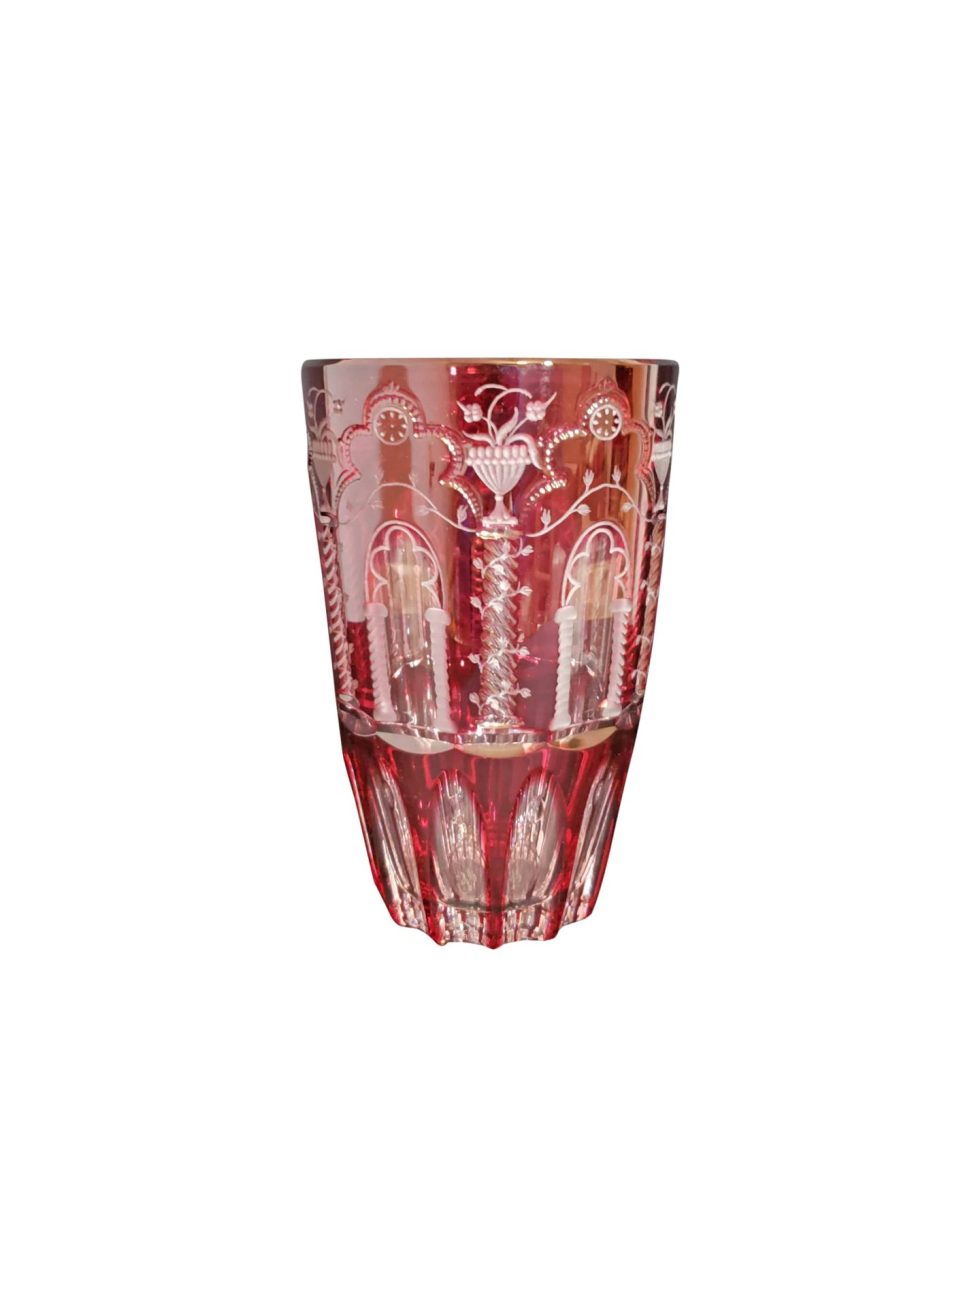 12223 Varga Art Crystal Vase Signed Limited Edition of 5 – Baer & Bosch